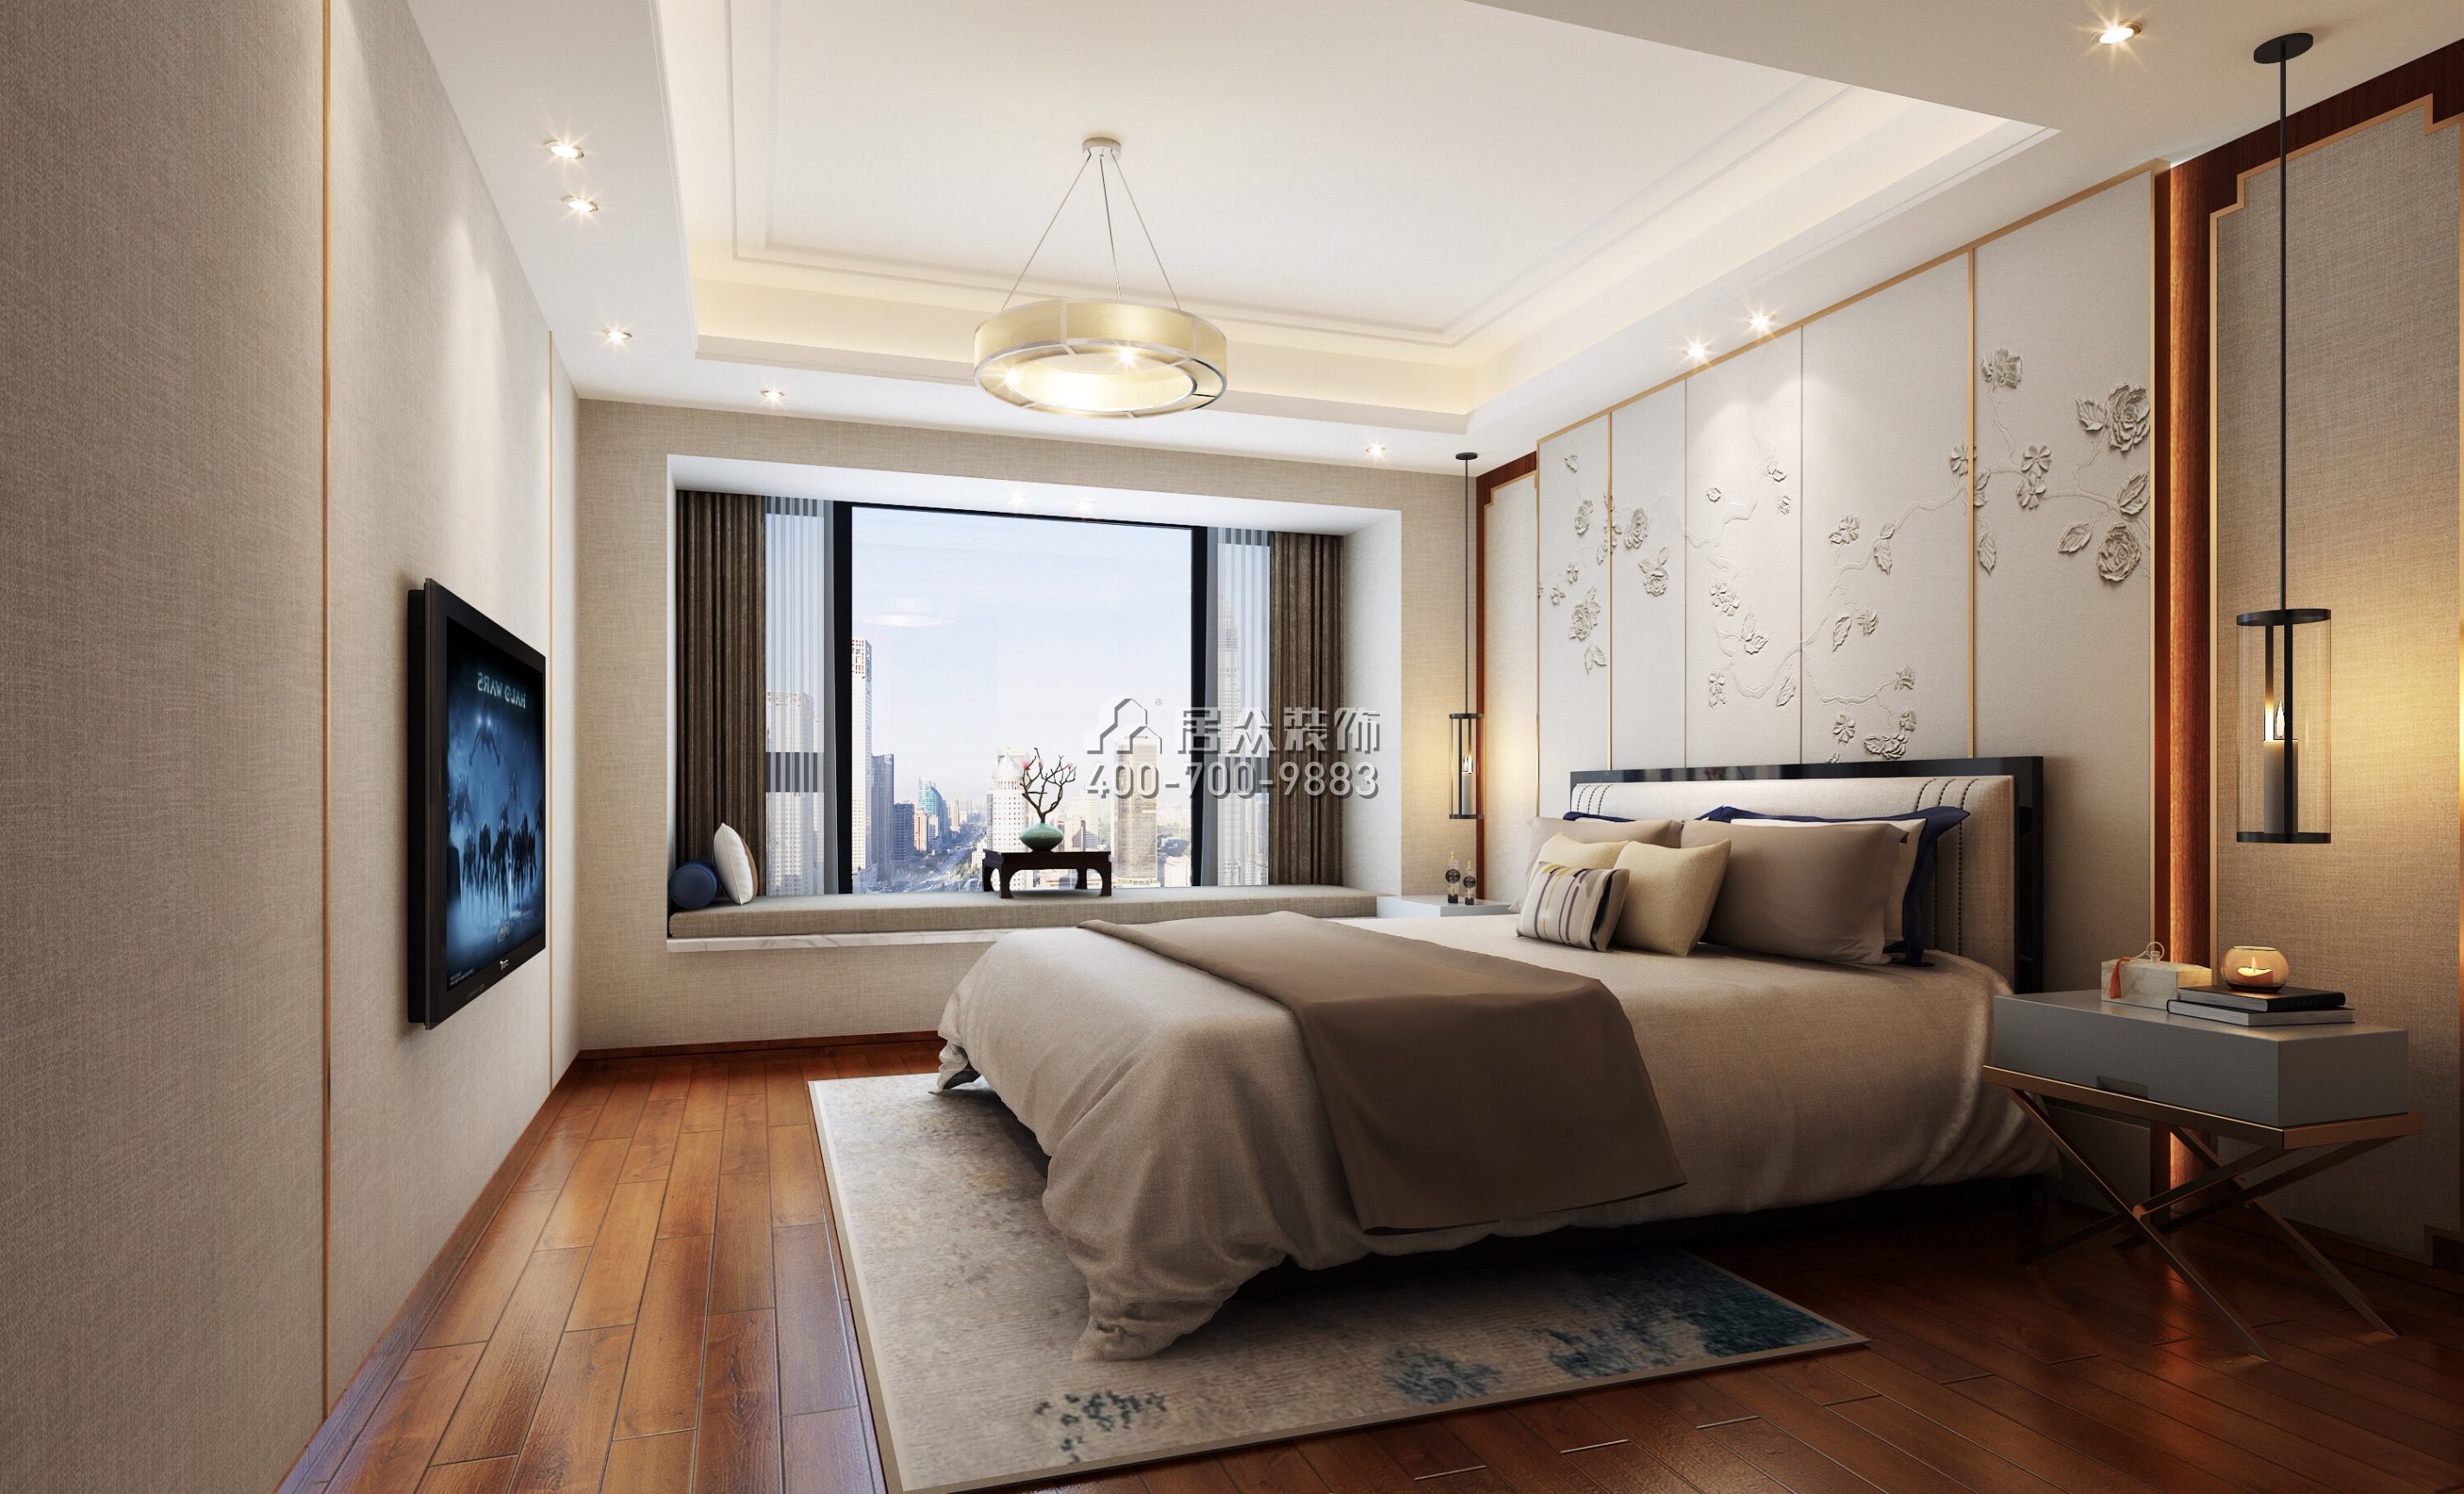 香山美墅花园200平方米中式风格平层户型卧室装修效果图